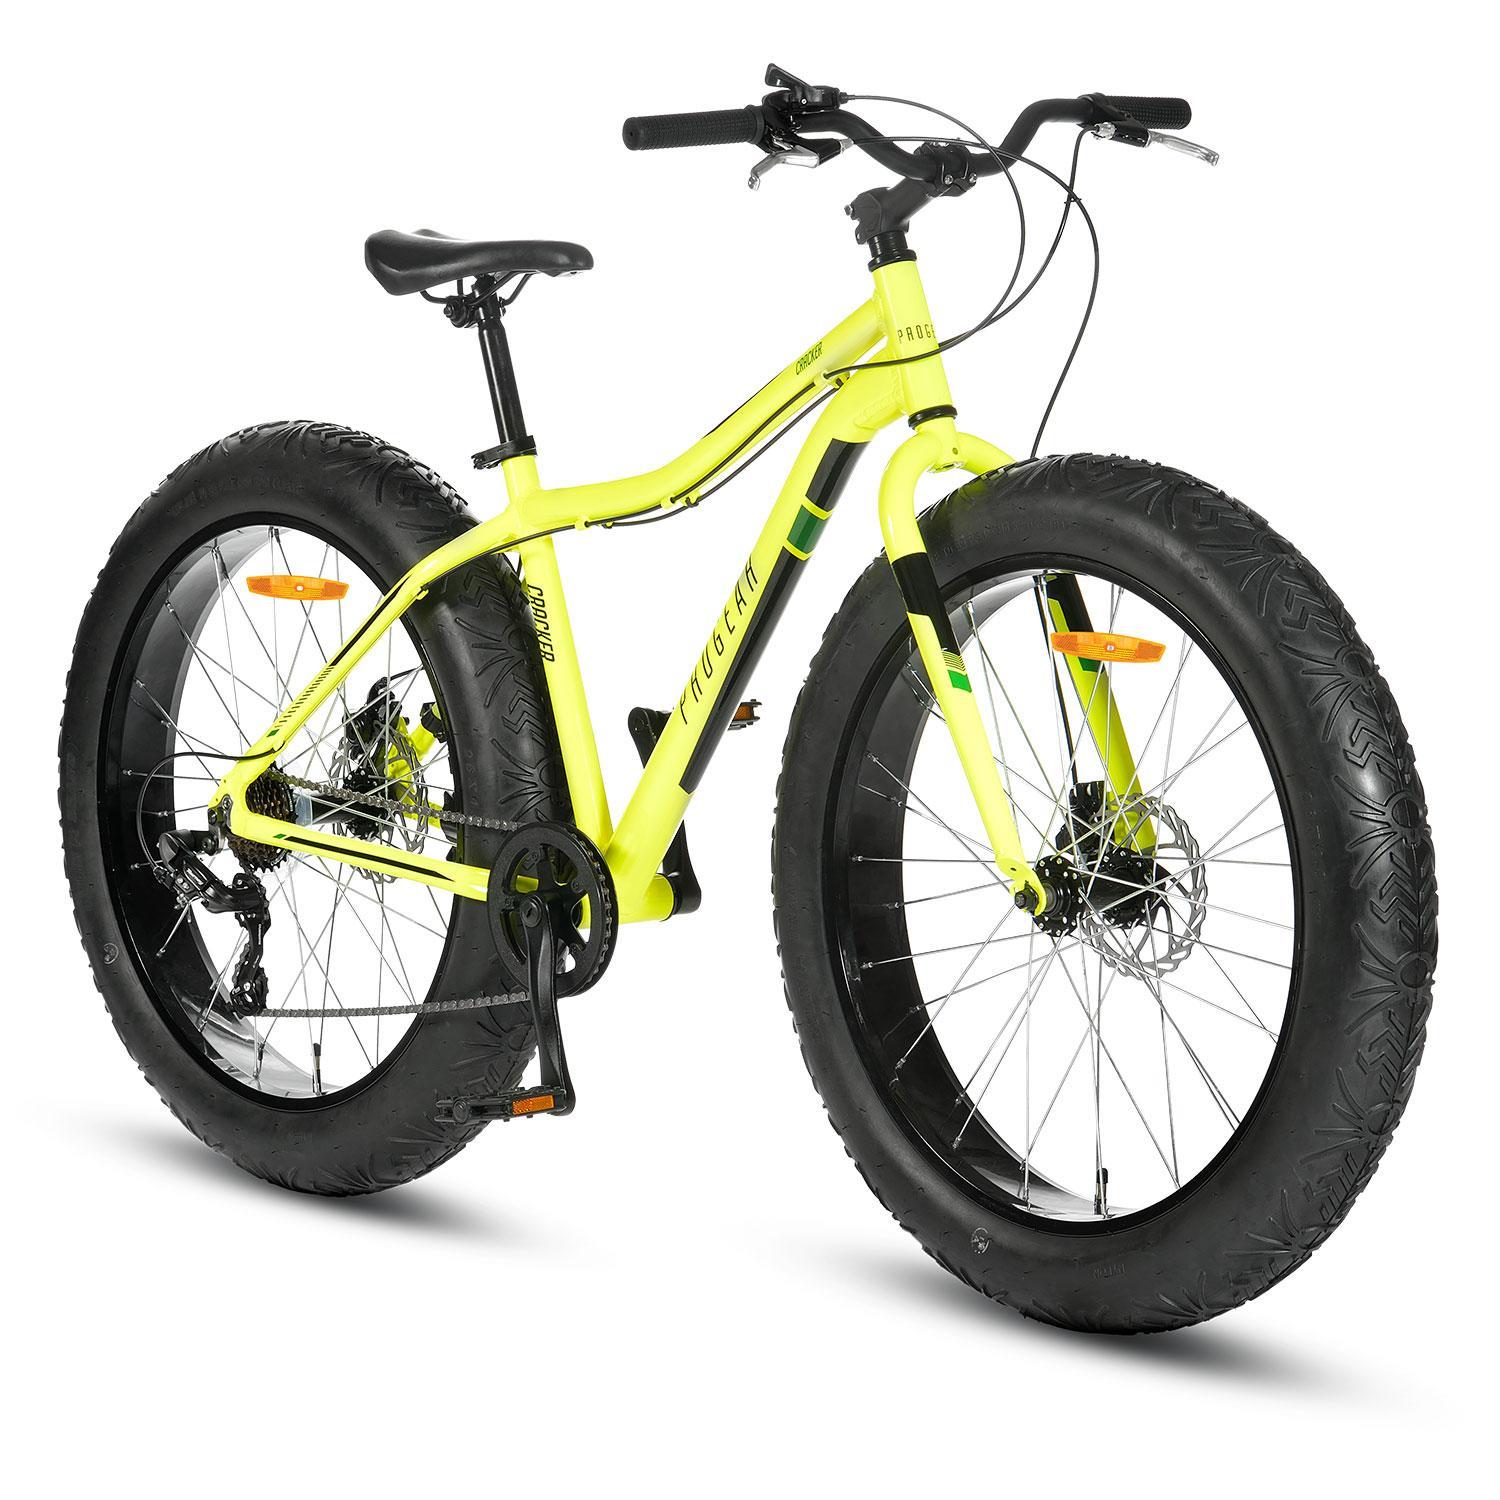 Progear Cracker Fat Tyre Bike 26*17" - Lime Green